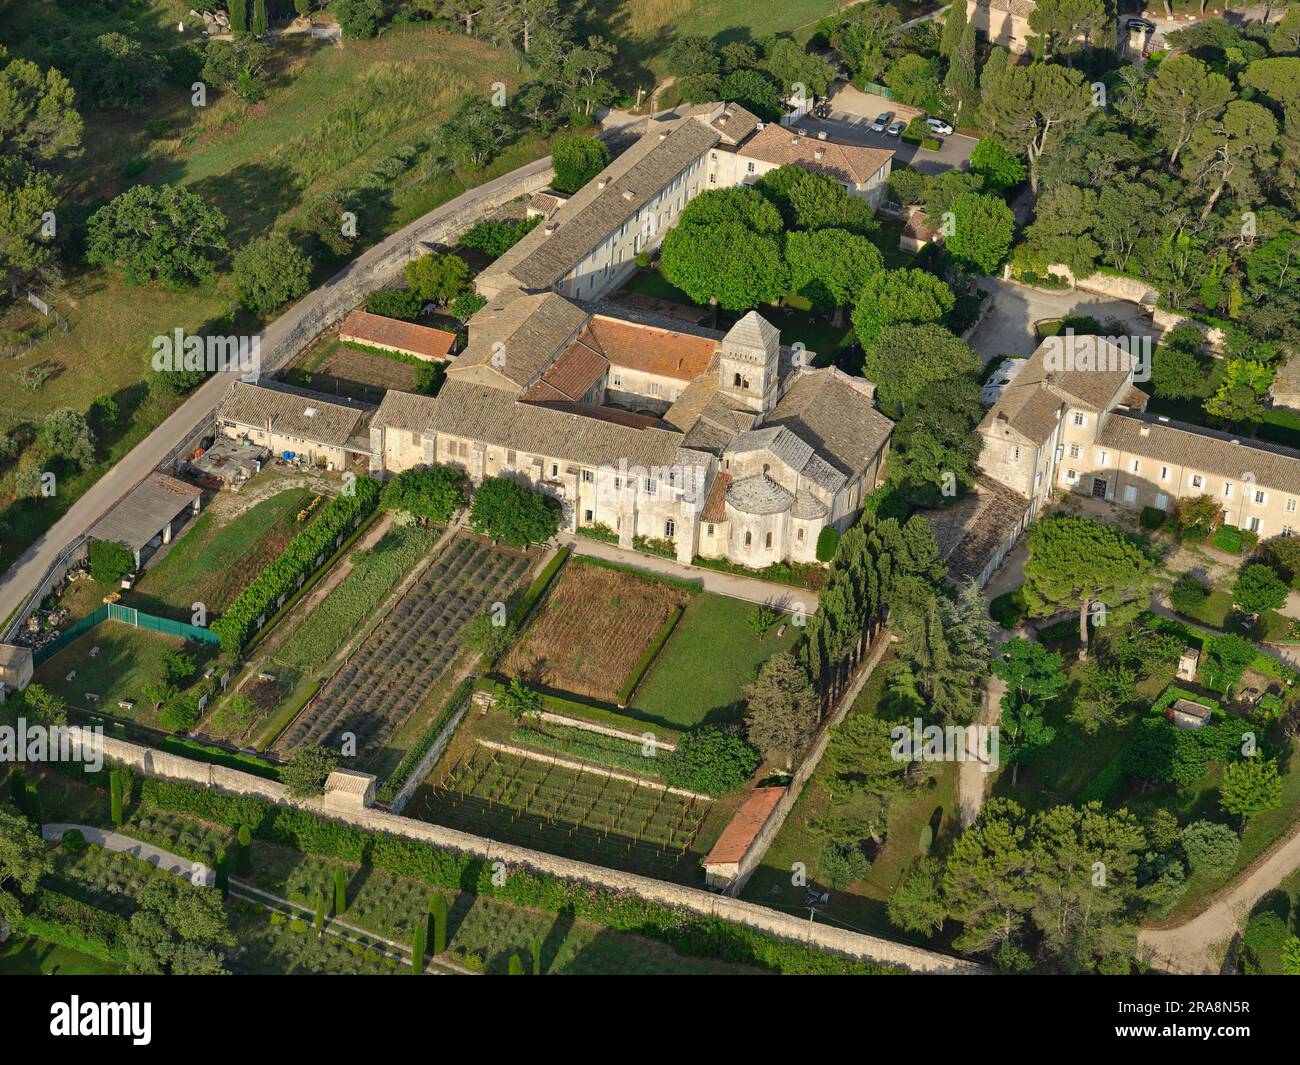 AERIAL VIEW. Monastery Saint-Paul de Mausole. Saint-Rémy-de-Provence, Bouches-du-Rhône, Provence-Alpes-Côte d'Azur, France. Stock Photo